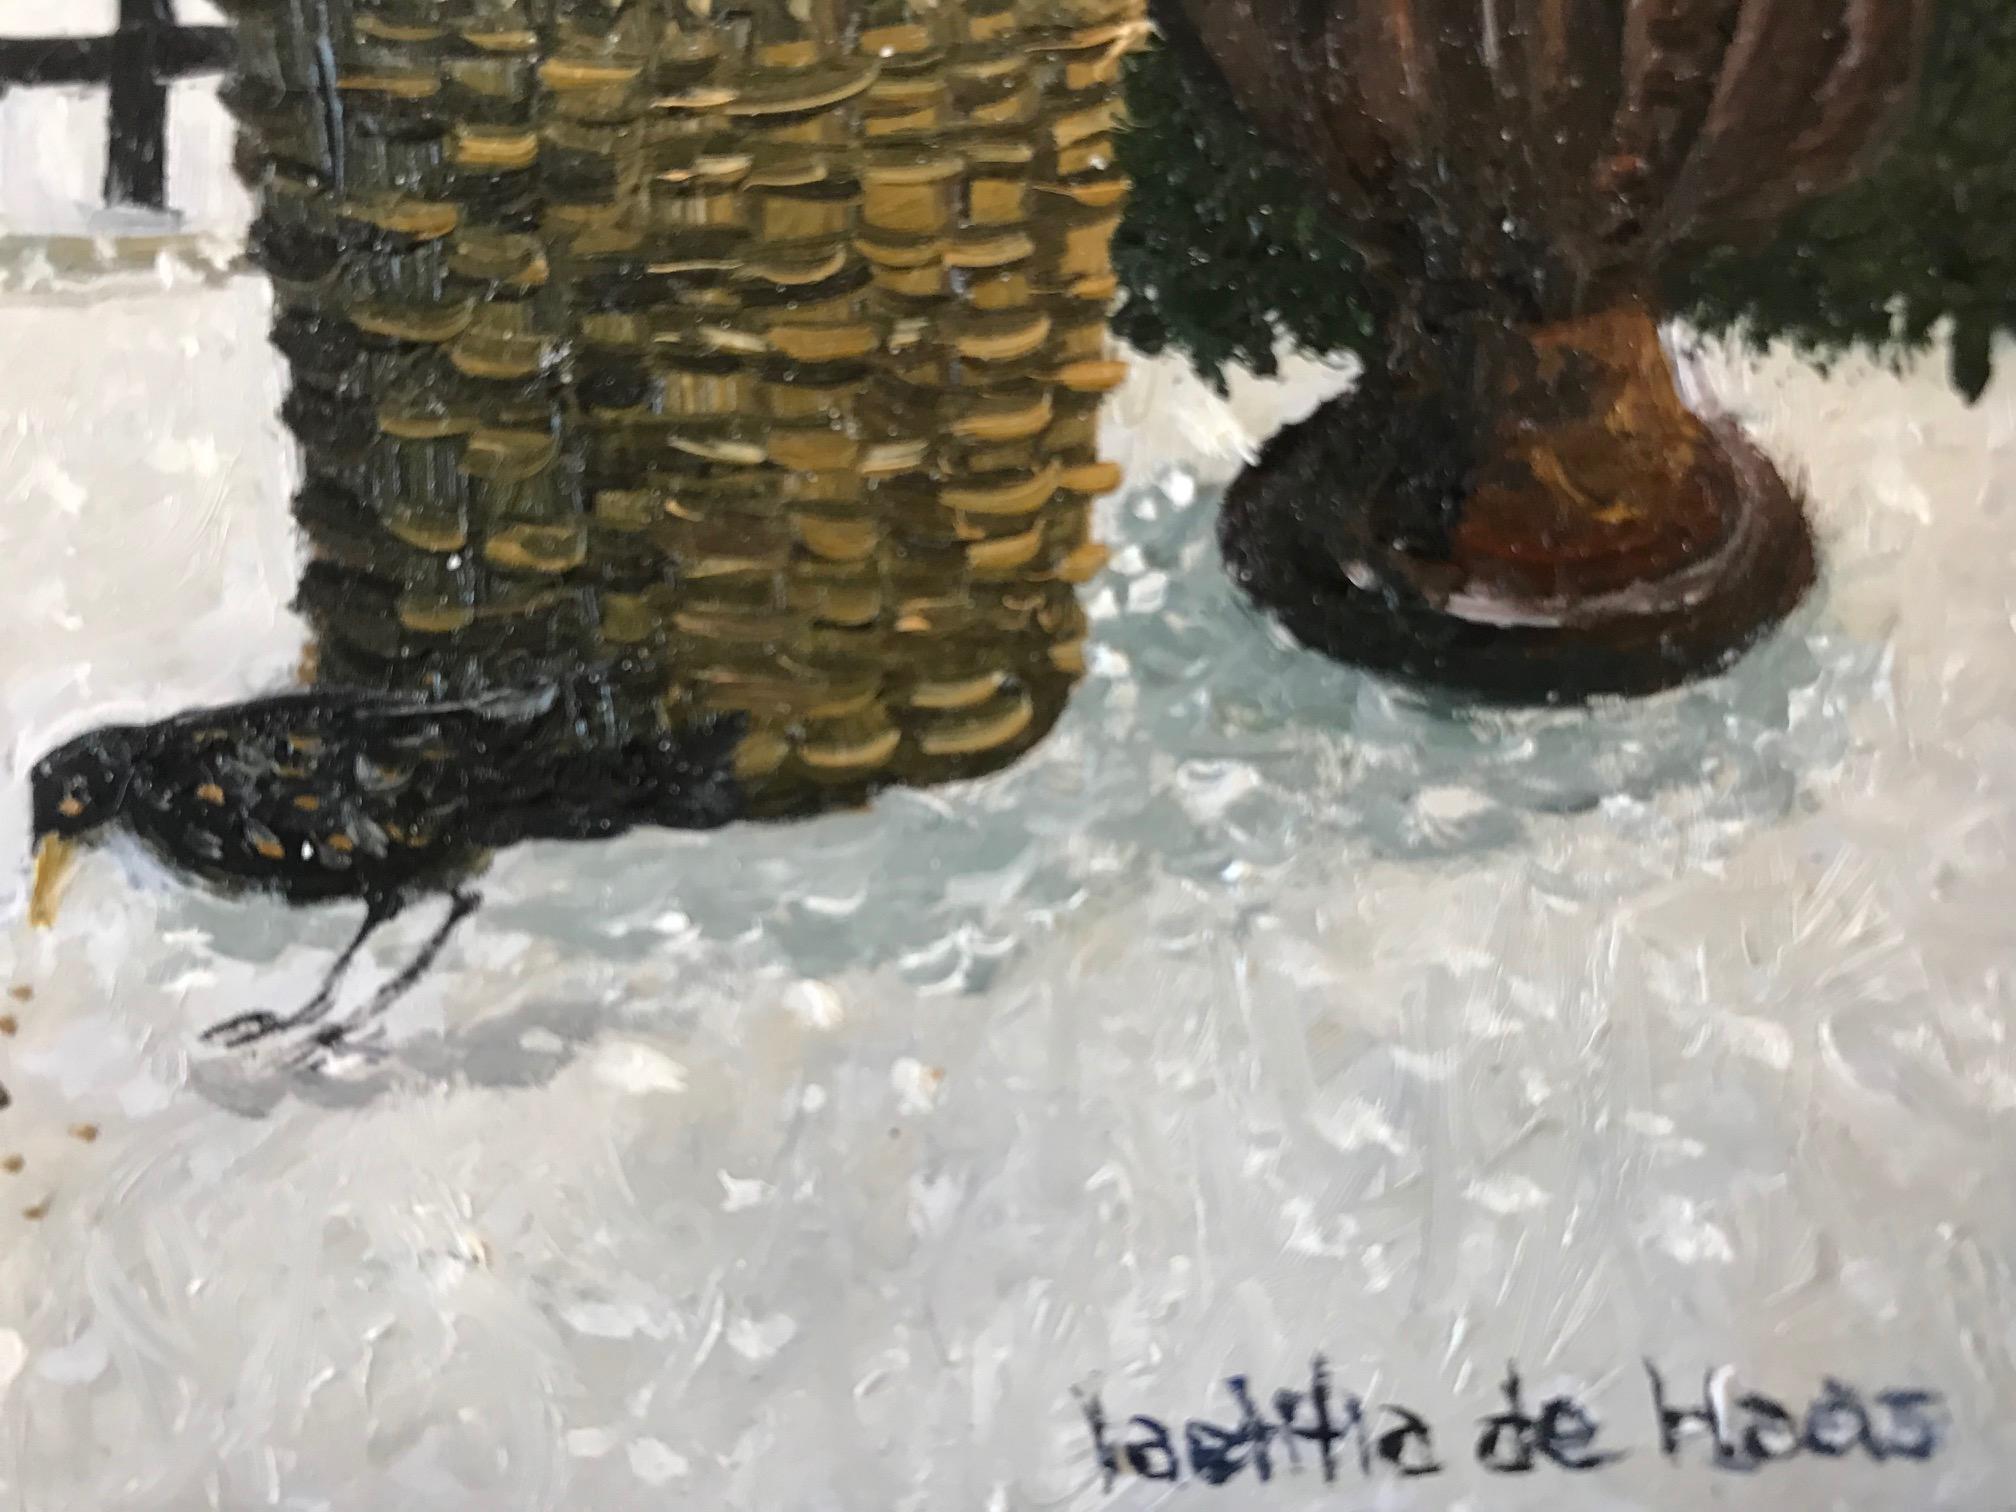 
L'atmosphère détendue est caractéristique des peintures à l'huile de l'artiste néerlandaise Laetitia de Haas (1948). Son travail dégage une distinction et une tranquillité qui nous font souvent défaut dans le monde quotidien. La modestie discrète